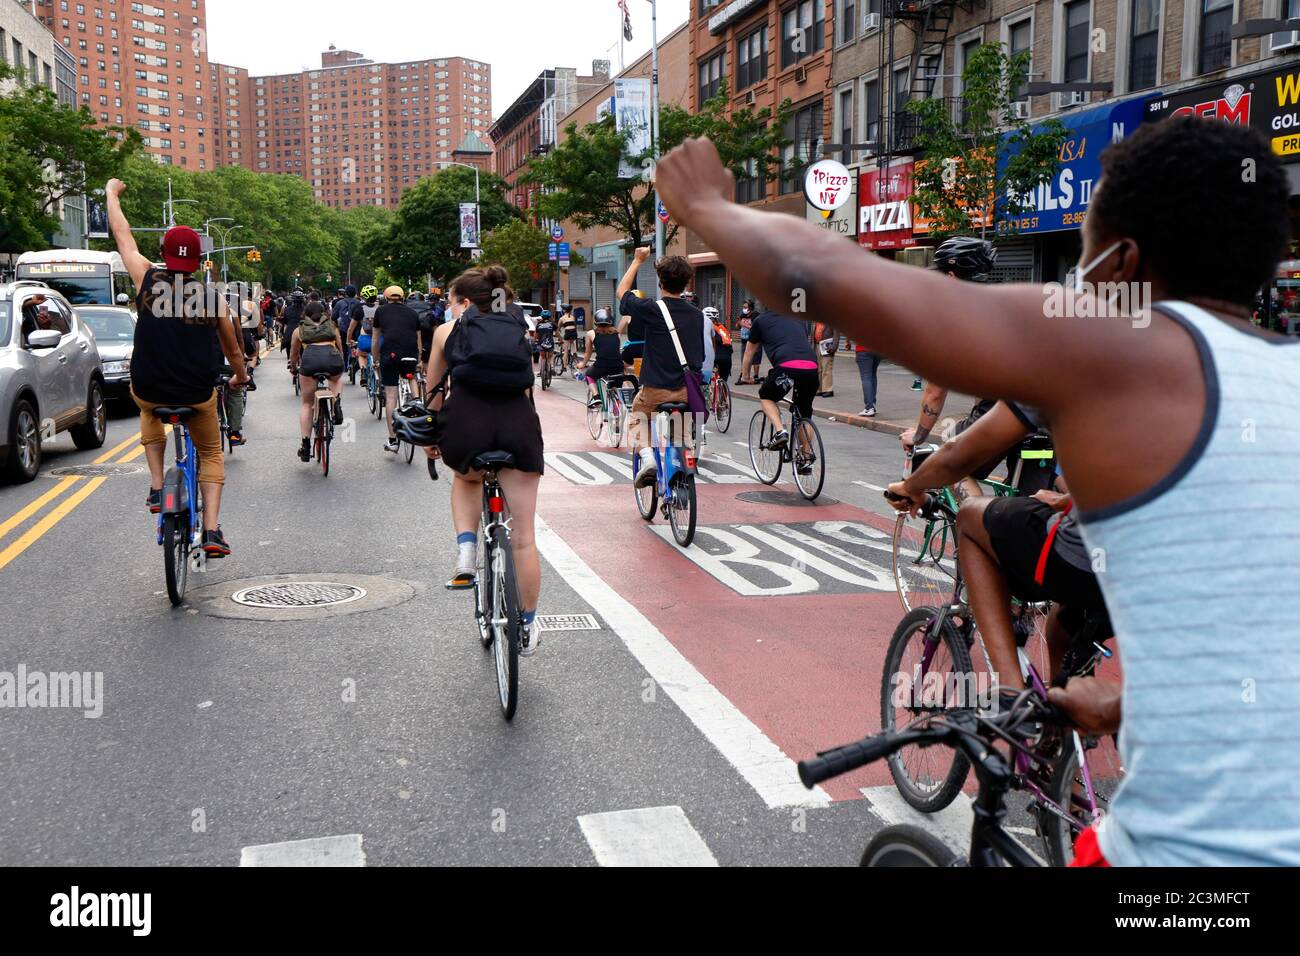 New York, NY, 20. Juni 2020. Fahrradfahrer heben die Fäuste, während sie die West 125th Street entlang fahren.der Fahrradprotest war eine Solidaritätsfahrt mit Black Lives Matter, die in einer Reihe von amerikanischen Polizeimorden Gerechtigkeit fordert: George Floyd, Breonna Taylor und unzählige andere. Die Fahrradtour wurde von dem Kollektiv Street Riders NYC organisiert. Mehrere tausend Menschen nahmen an der bewegenden Demonstration Teil, die vom Times Square, Harlem und Battery Park aus ging. Juni 20, 2020 Stockfoto